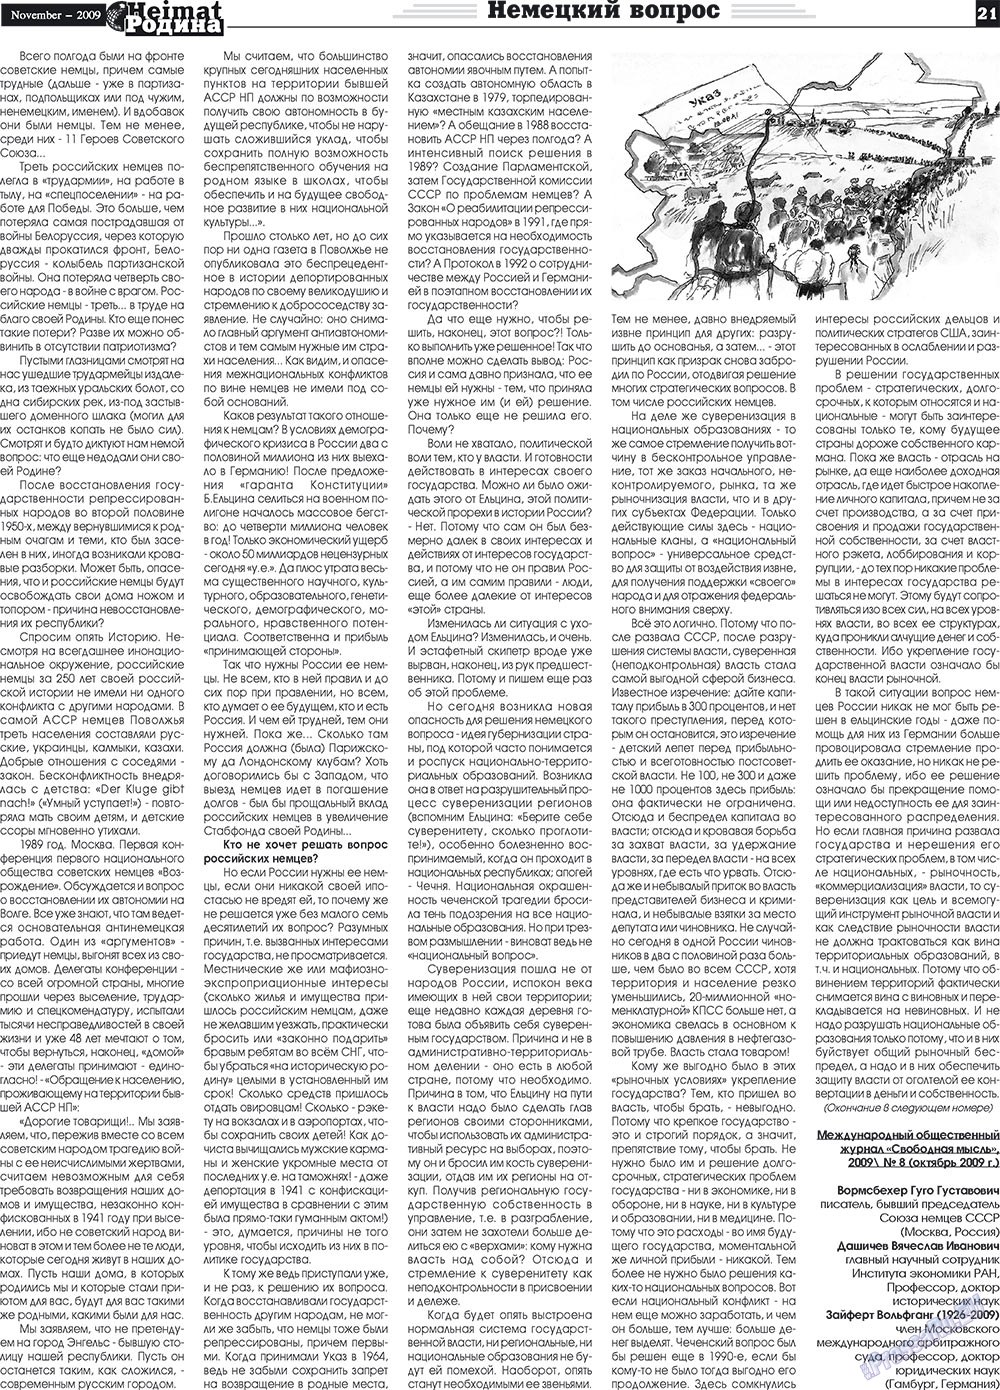 Heimat-Родина (газета). 2009 год, номер 11, стр. 21